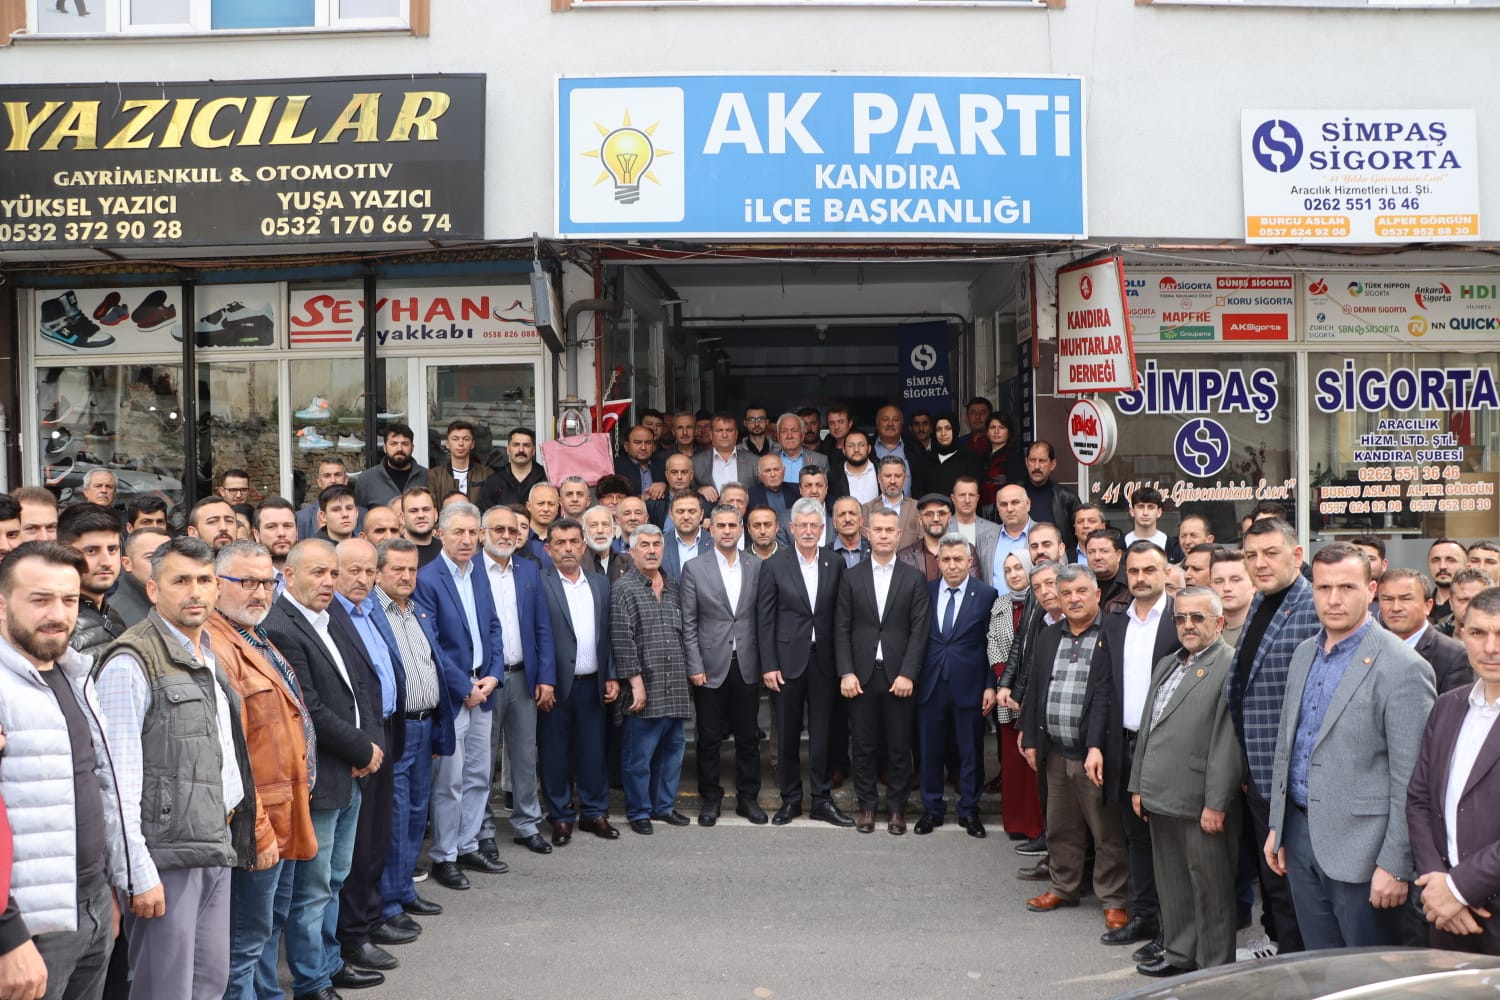 AK Parti Kocaeli Milletvekili Adayı Mehmet Ellibeş,  Kandıra’da 70 muhtarla bir araya geldi. Ellibeş,